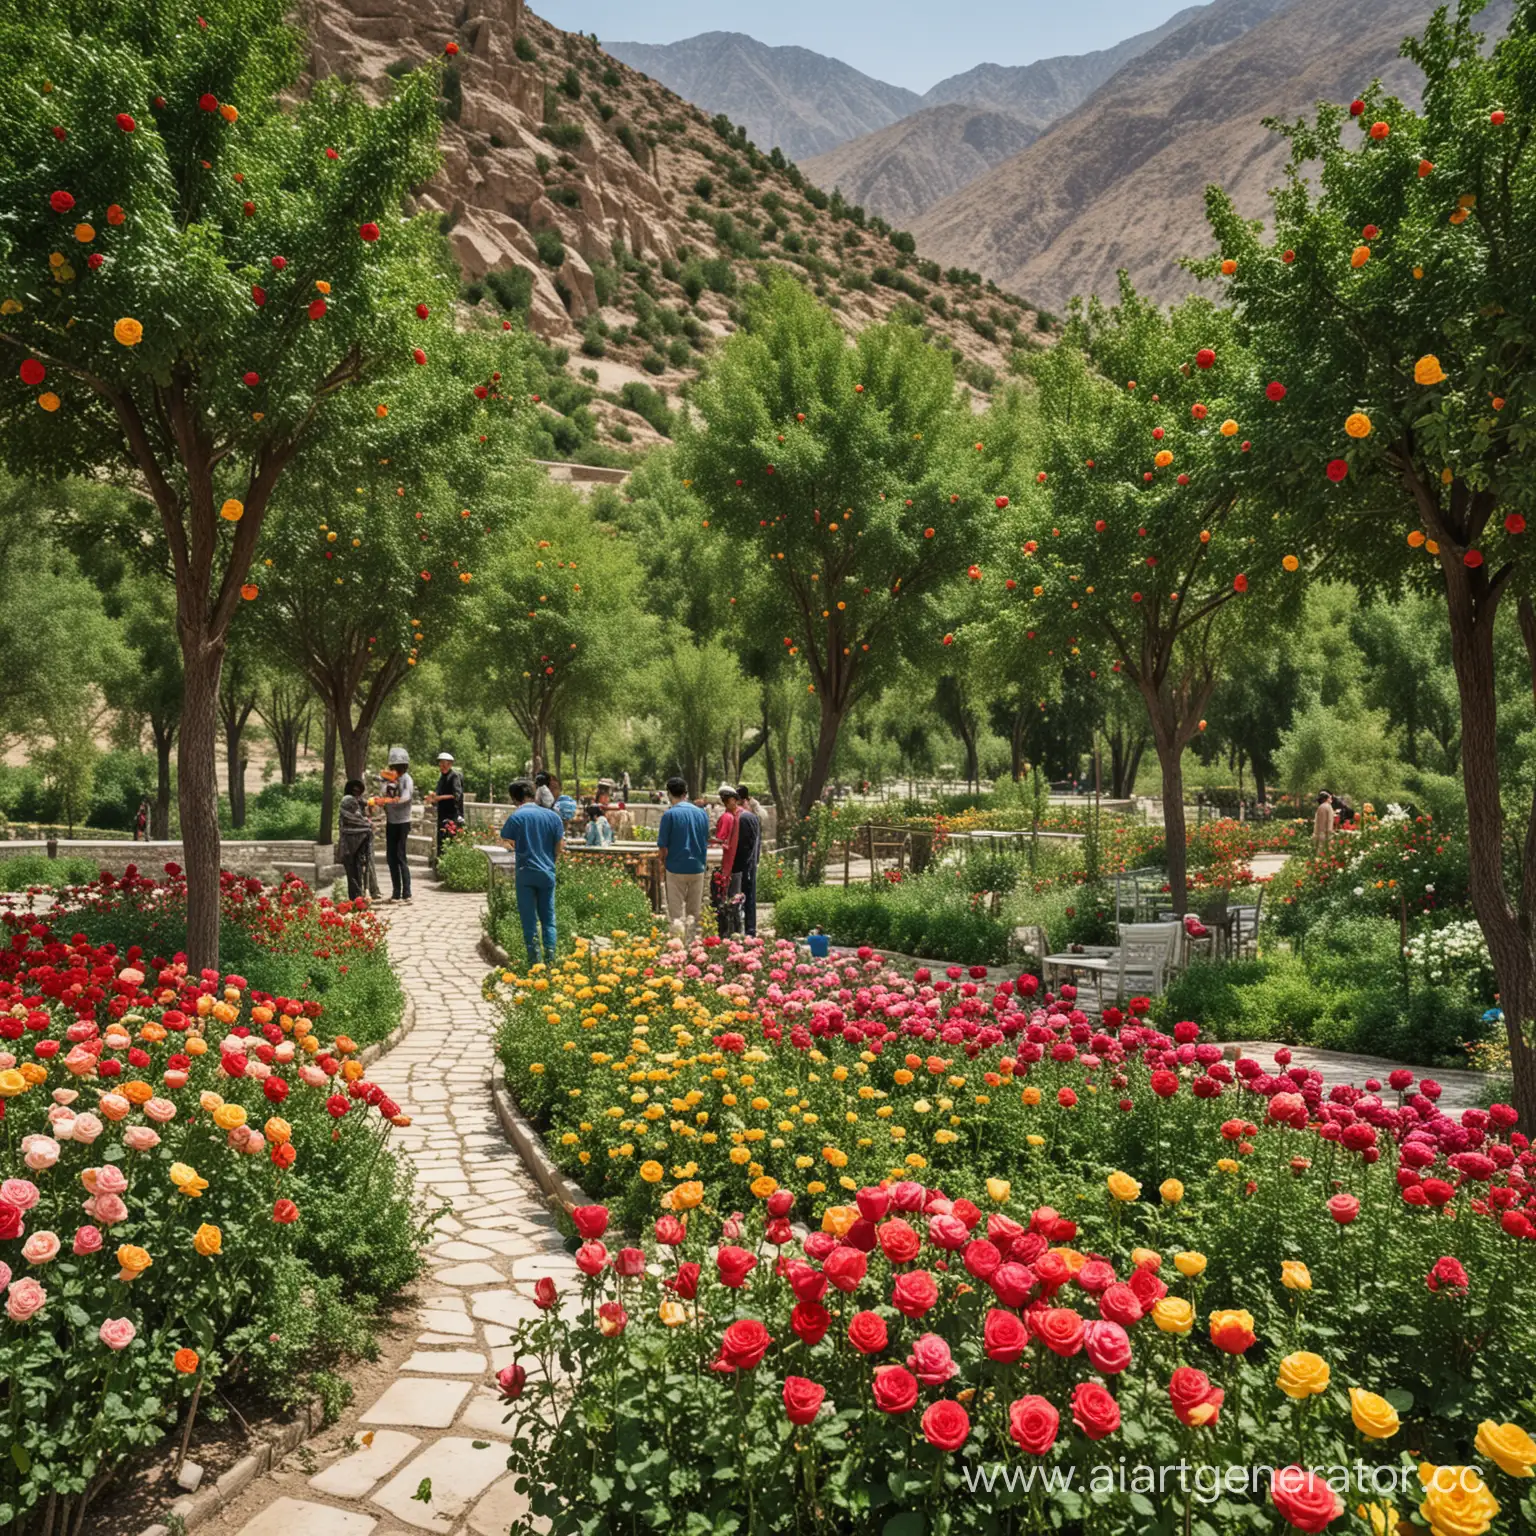 На фоне величественных узбекистанских гор, покрытых свежим зеленым покрывалом, расположен урюковый сад. В этом саду цветут яркие, разноцветные урюки, создавая невероятное зрелище. Среди цветов виднеется тапчан, покрытый изысканными узбекскими узорами и наполненный разнообразными национальными угощениями: сухофруктами, орехами, семечками и сладостями. Вокруг тачана собрались люди, наслаждаясь прекрасной природой и вкусными угощениями в этом уединенном уголке рая. 

рядом готовят плов и шашлык ( мастер класс по приготовлению национальных блюд